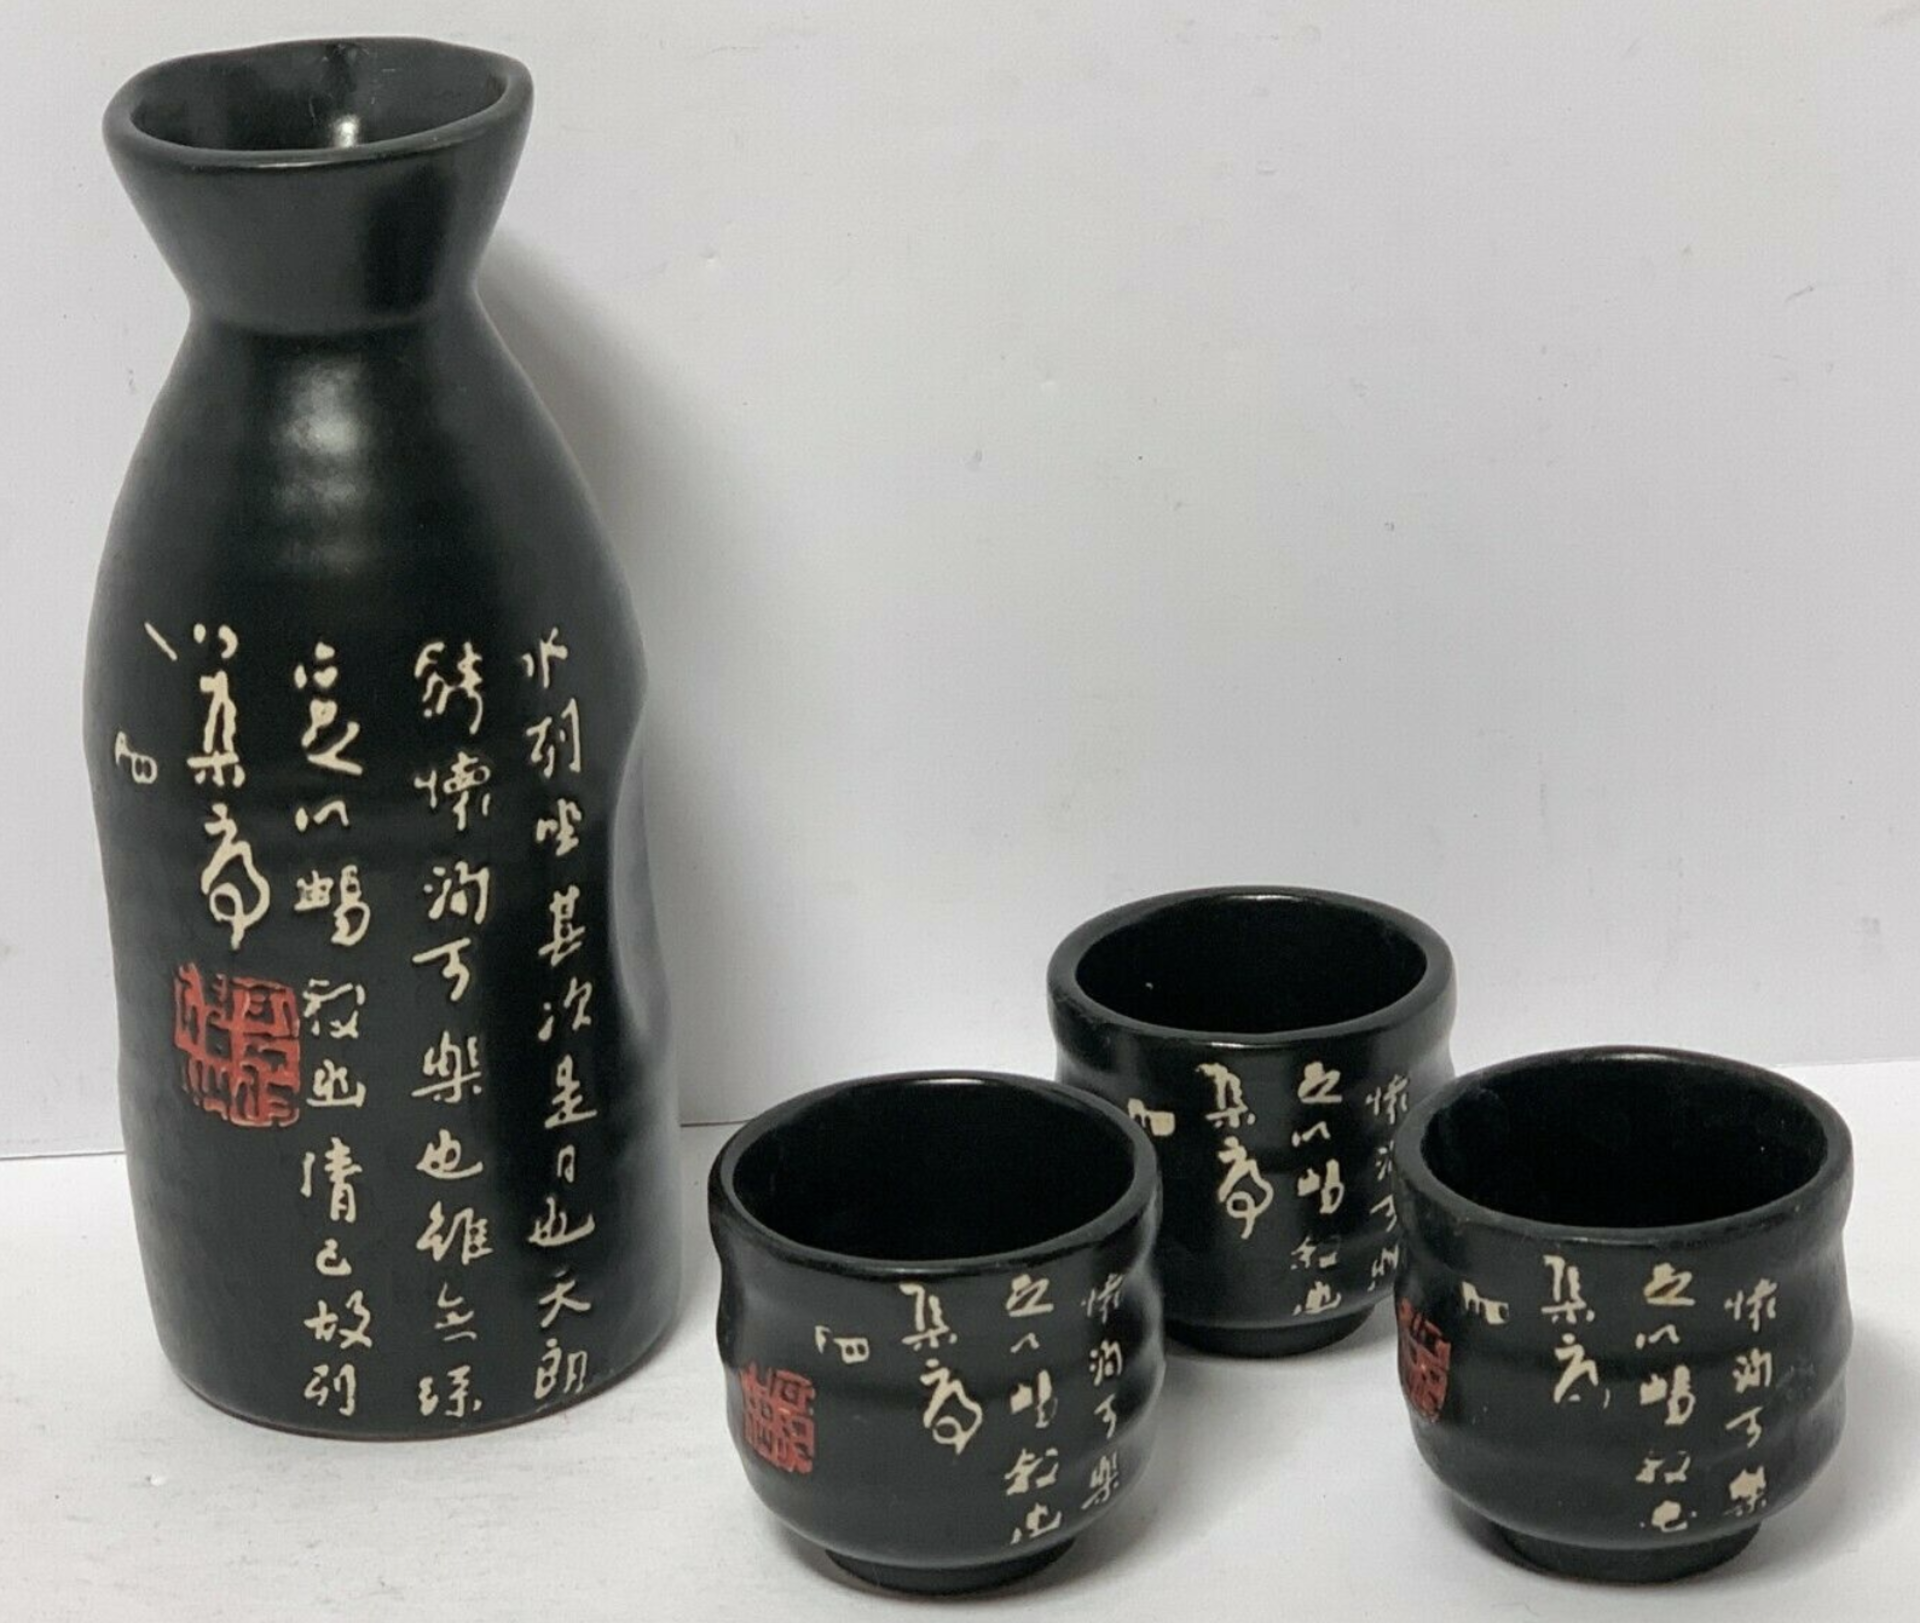 Porcelain Saki Set - 4 Piece - Pourer w/ 3 Cups